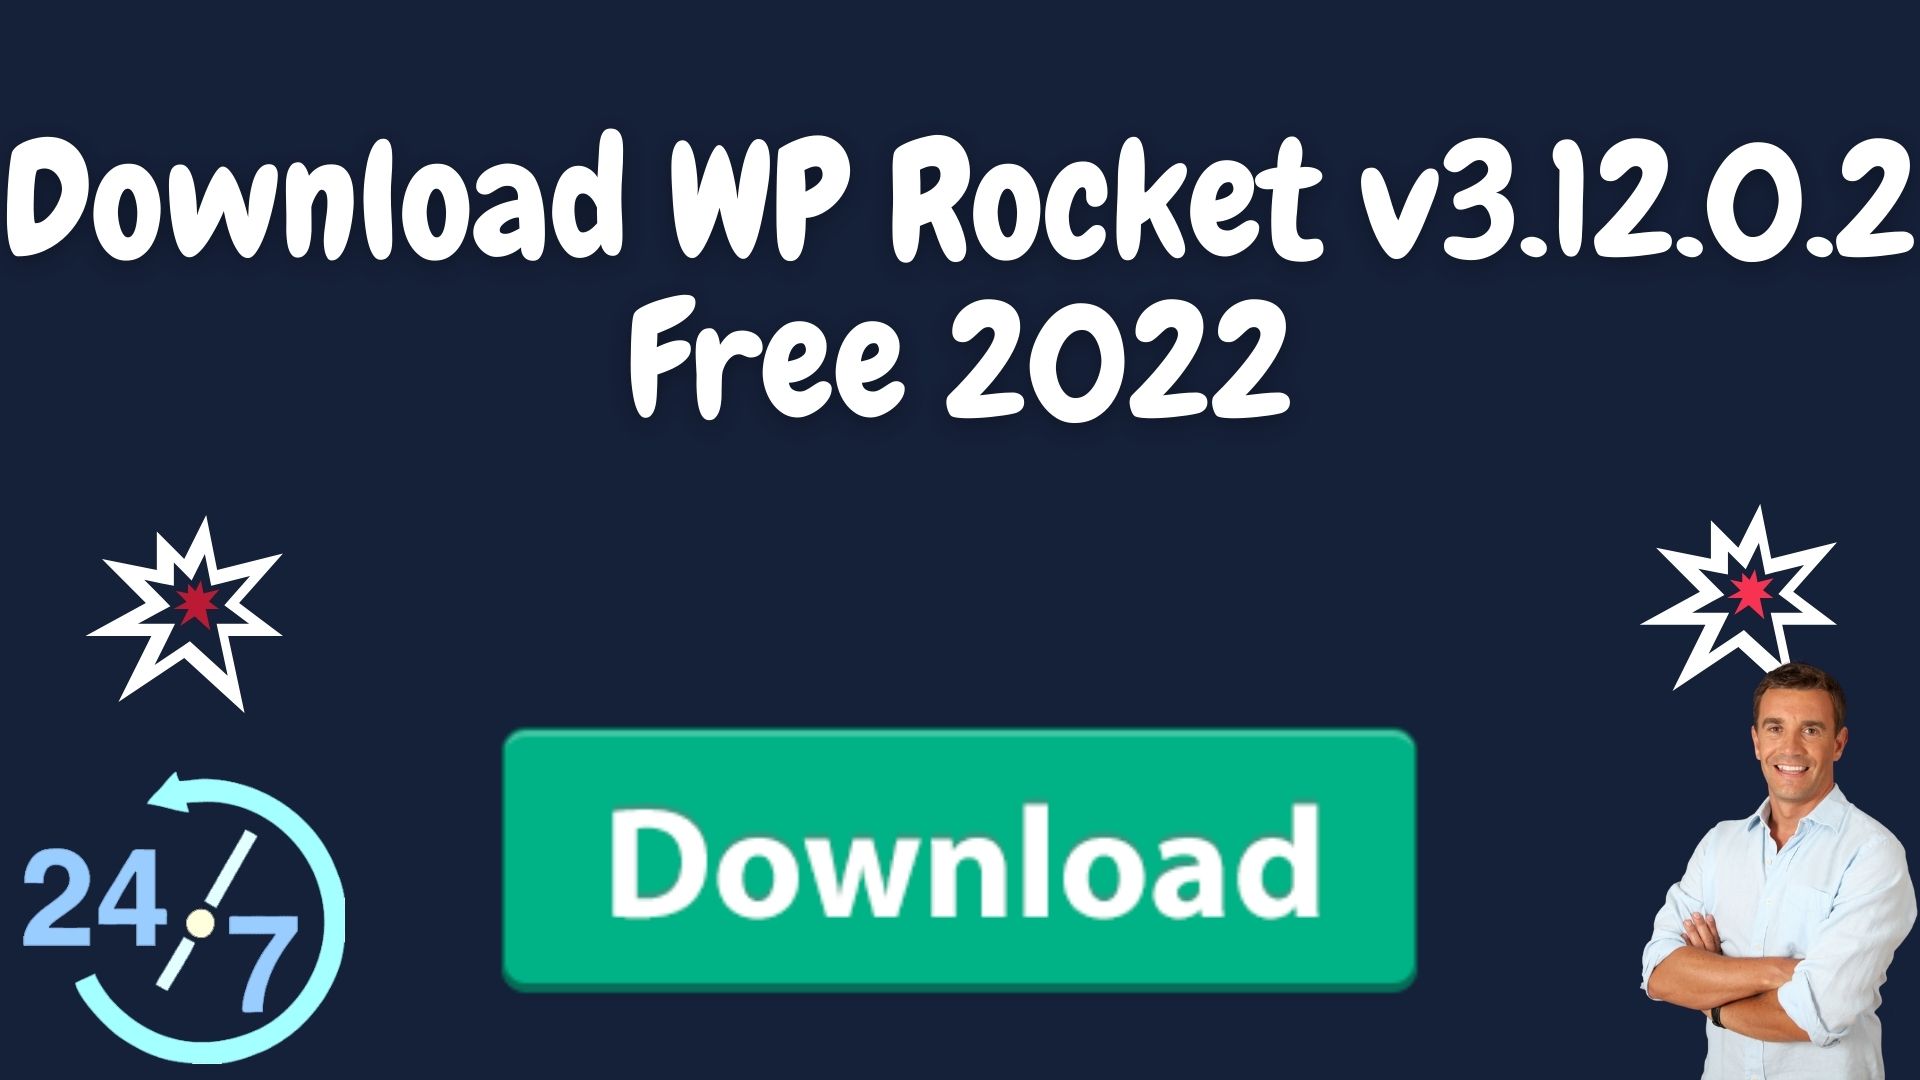 Download wp rocket v3. 12. 0. 2 free 2022